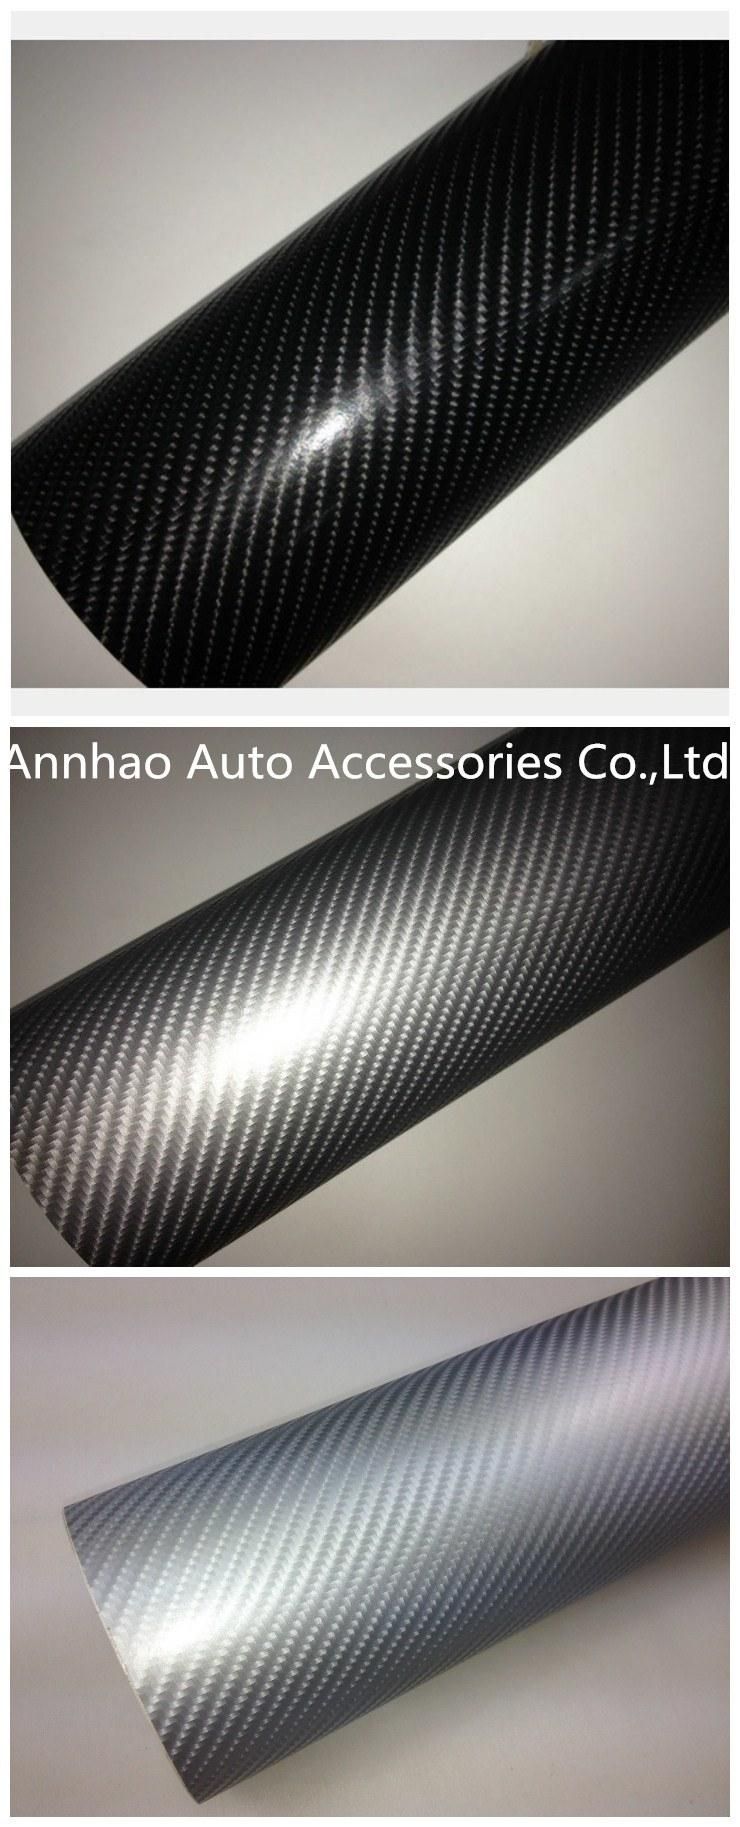 Factory Price Air Bubble Free Decoration 4D Carbon Fiber Texture Vehicle Vinyl Wrap